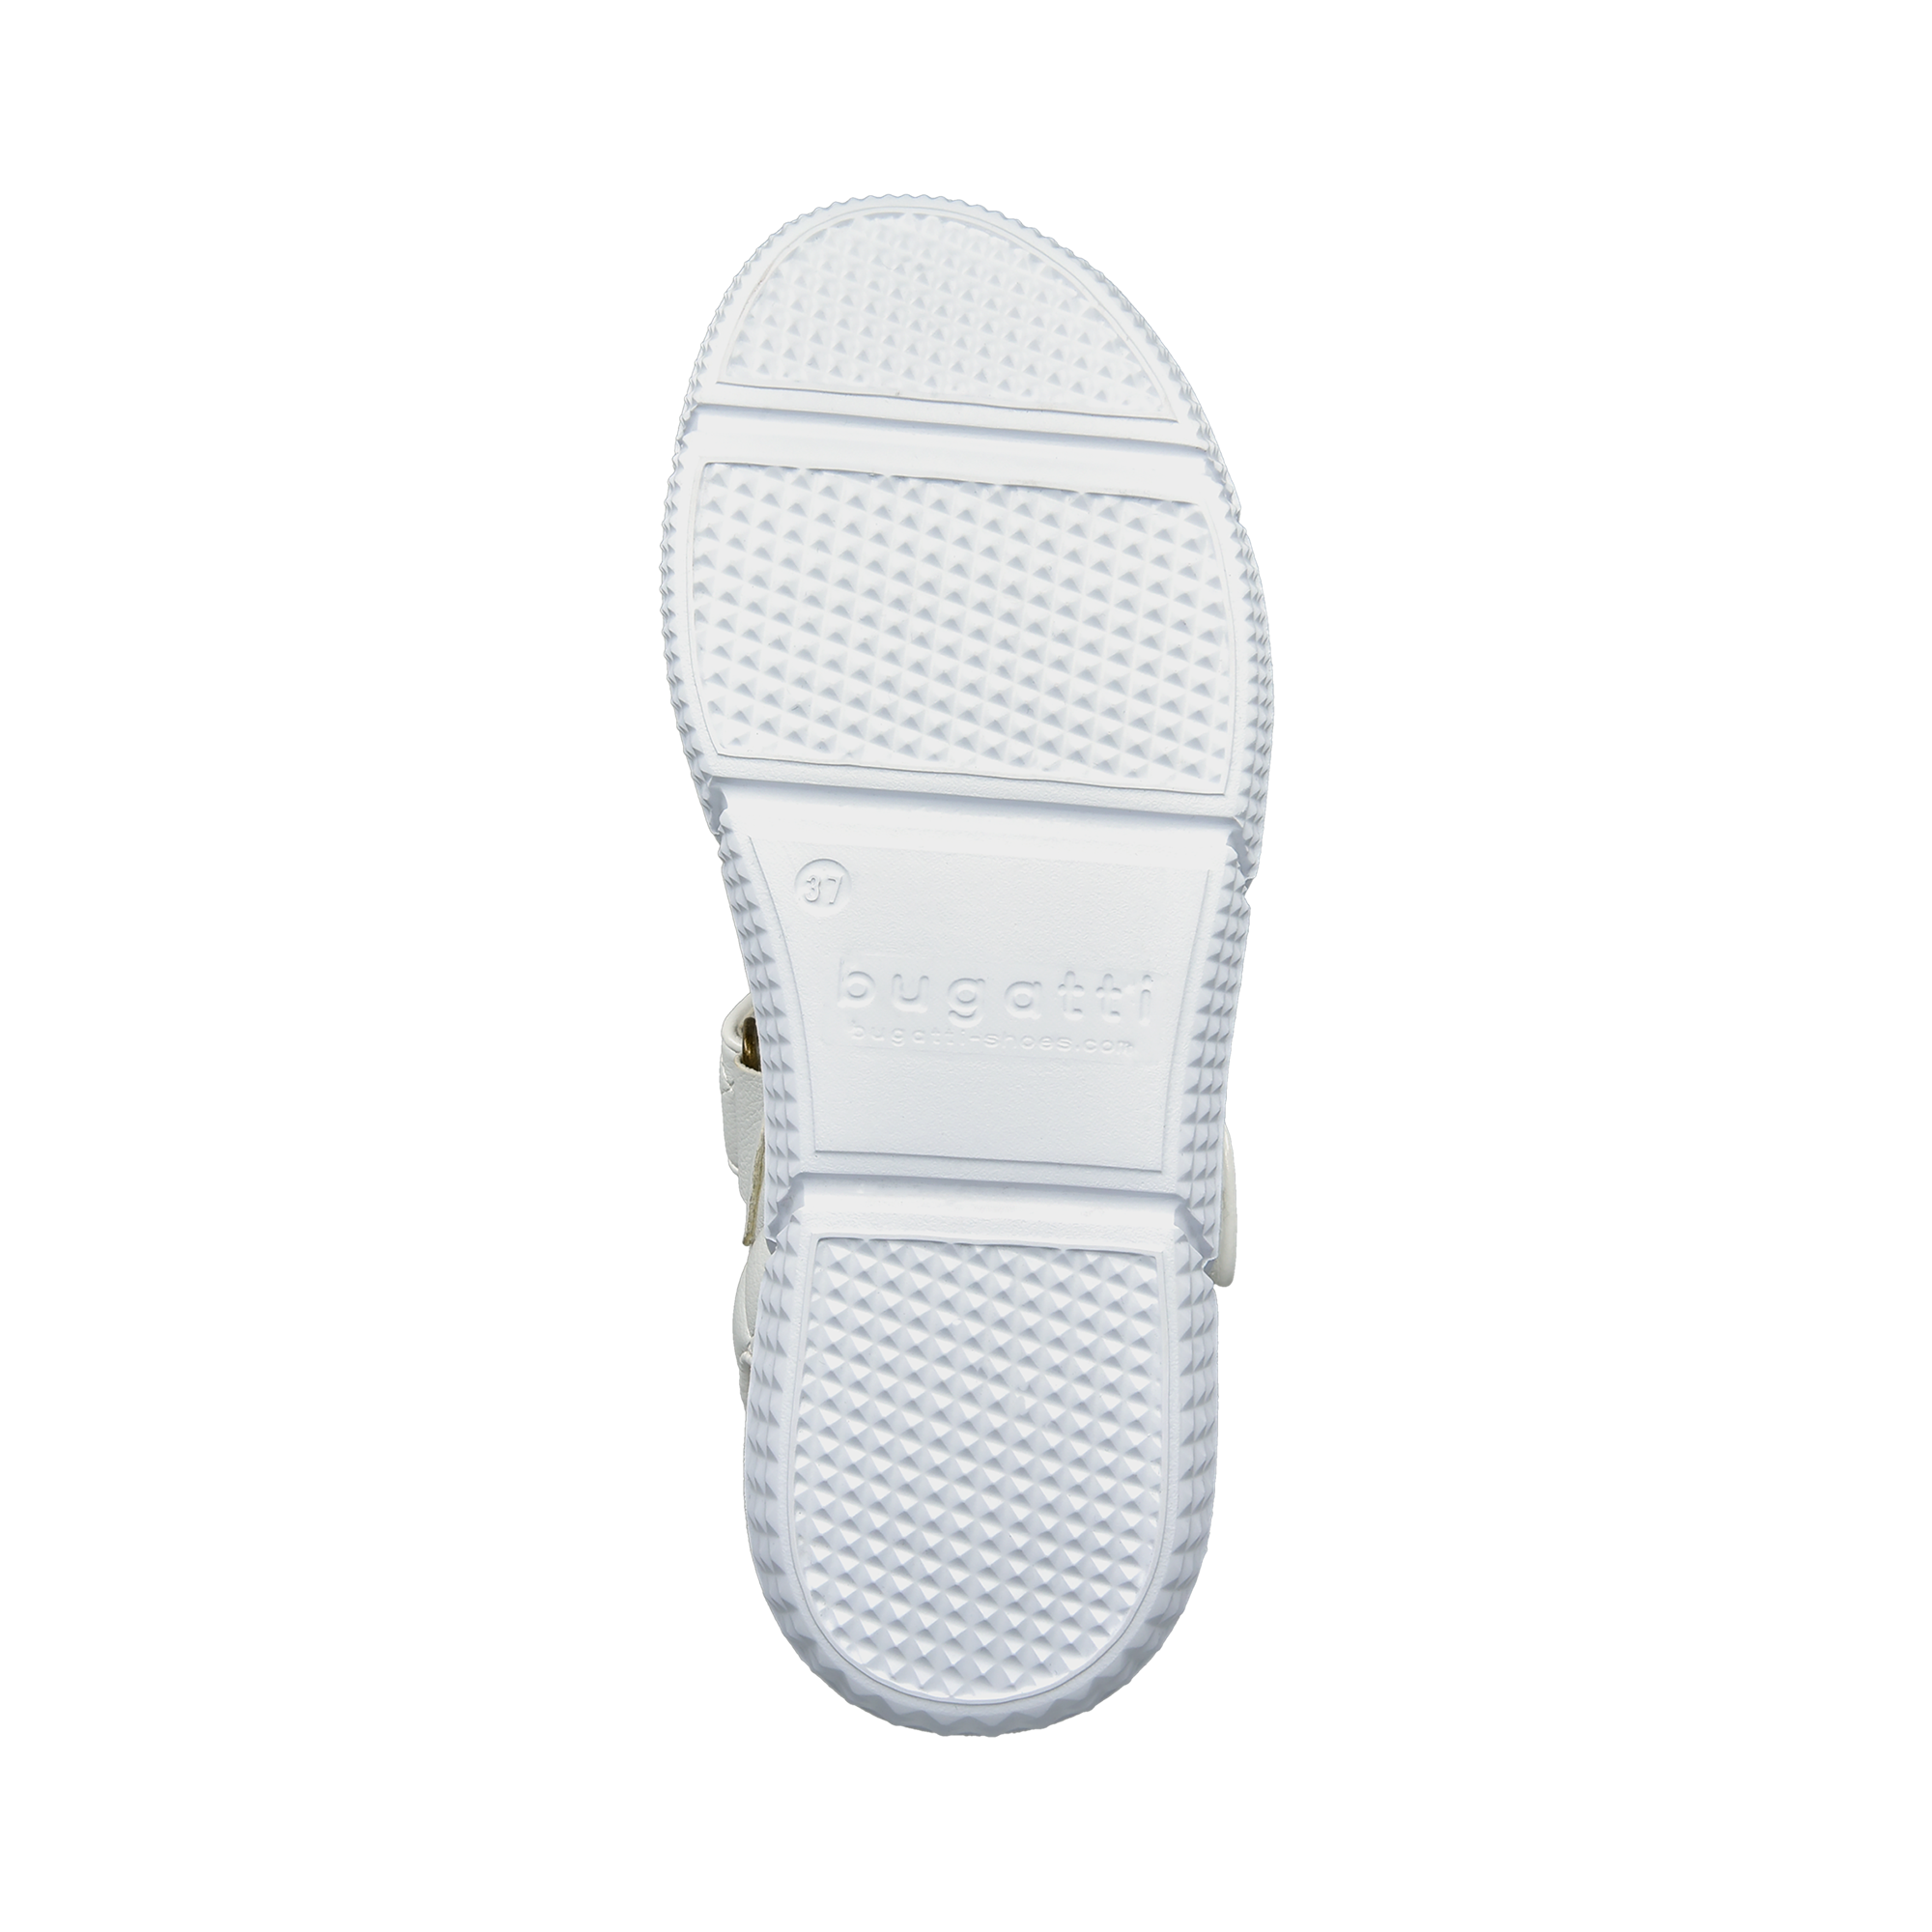 Sandal white